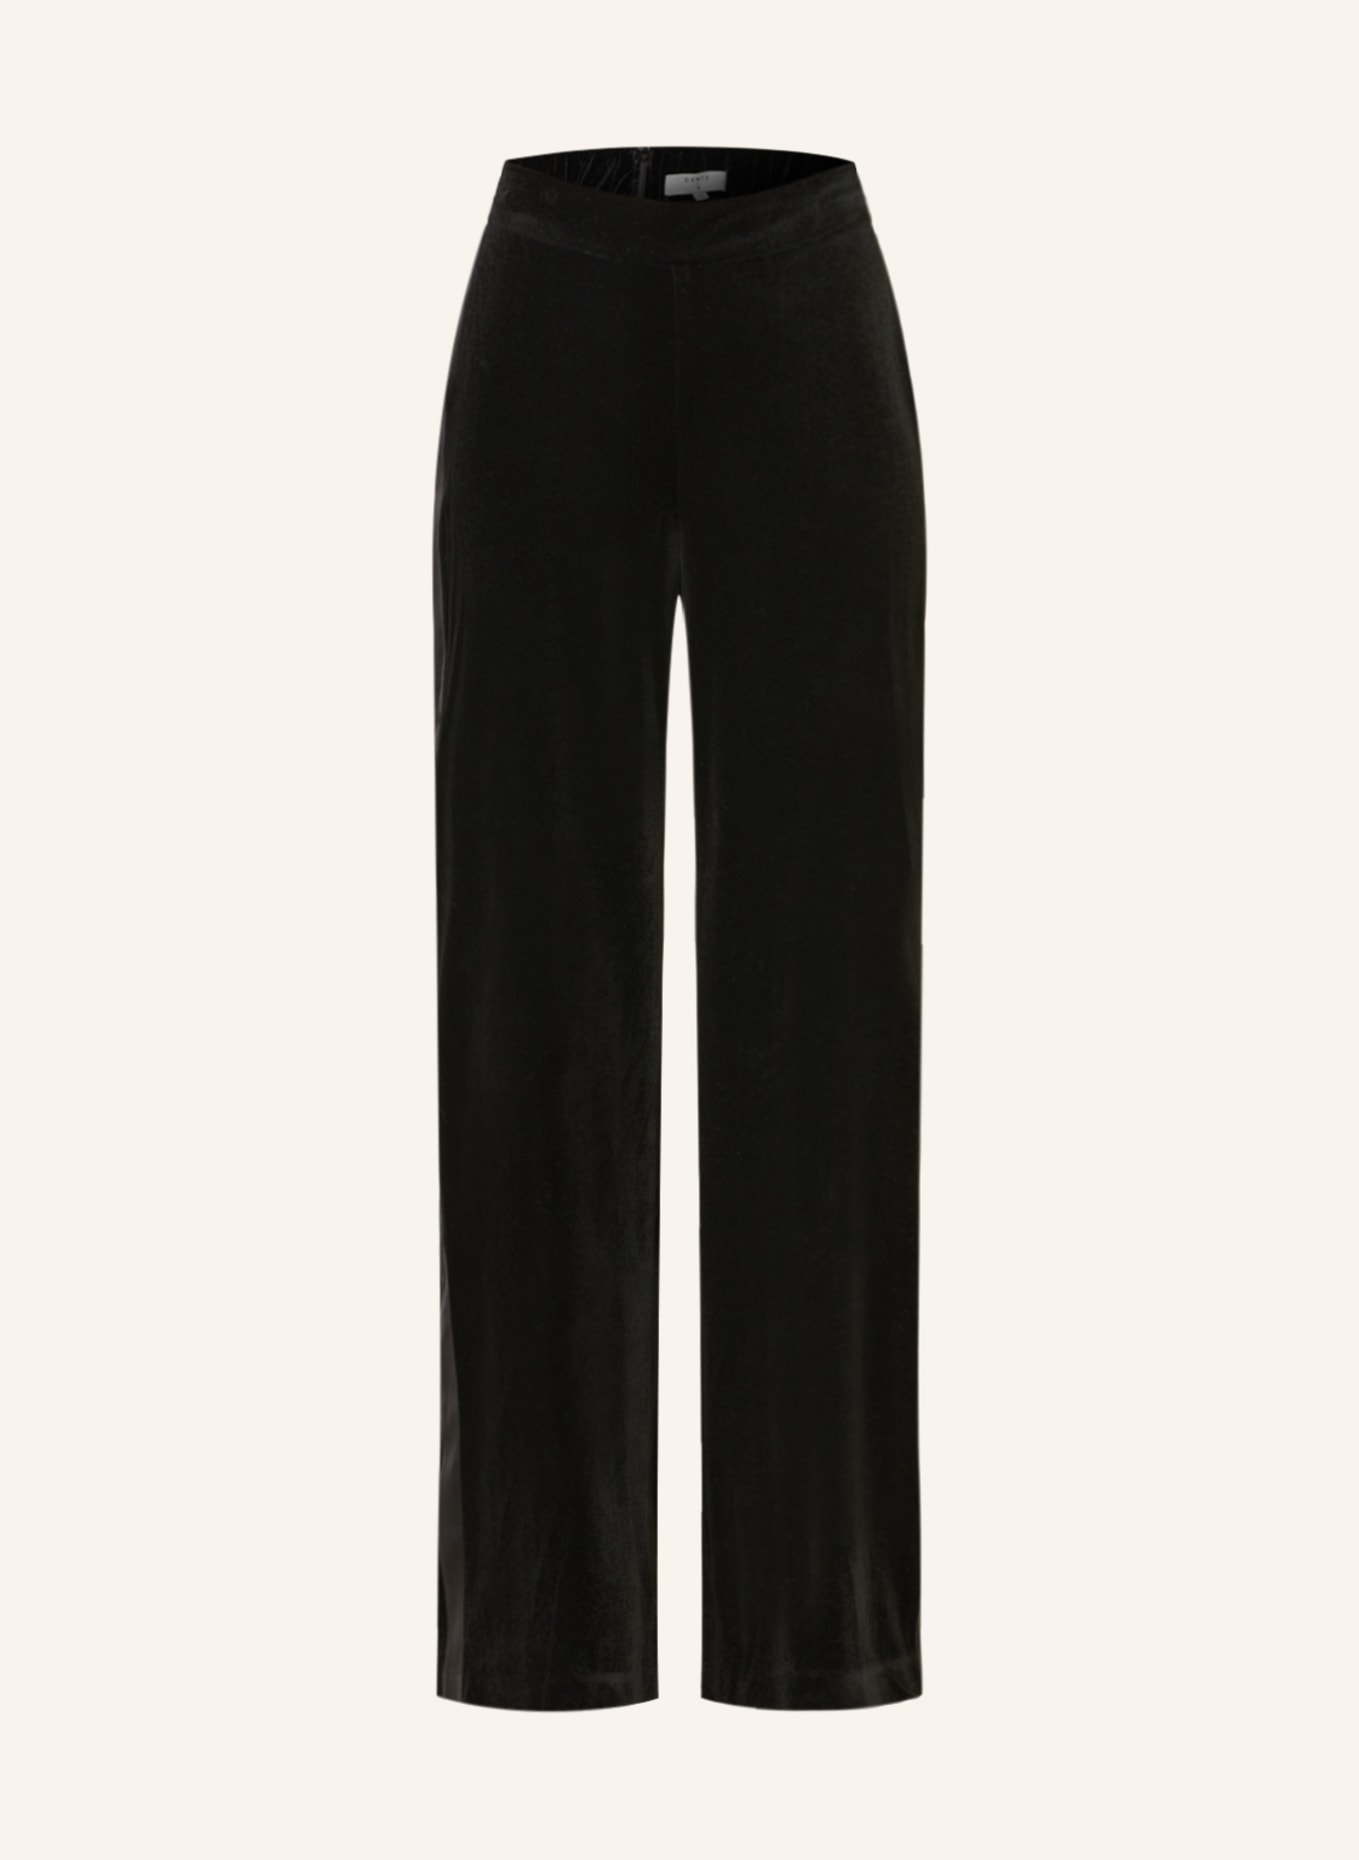 DANTE6 Wide leg trousers ALVIE made of velvet, Color: BLACK (Image 1)